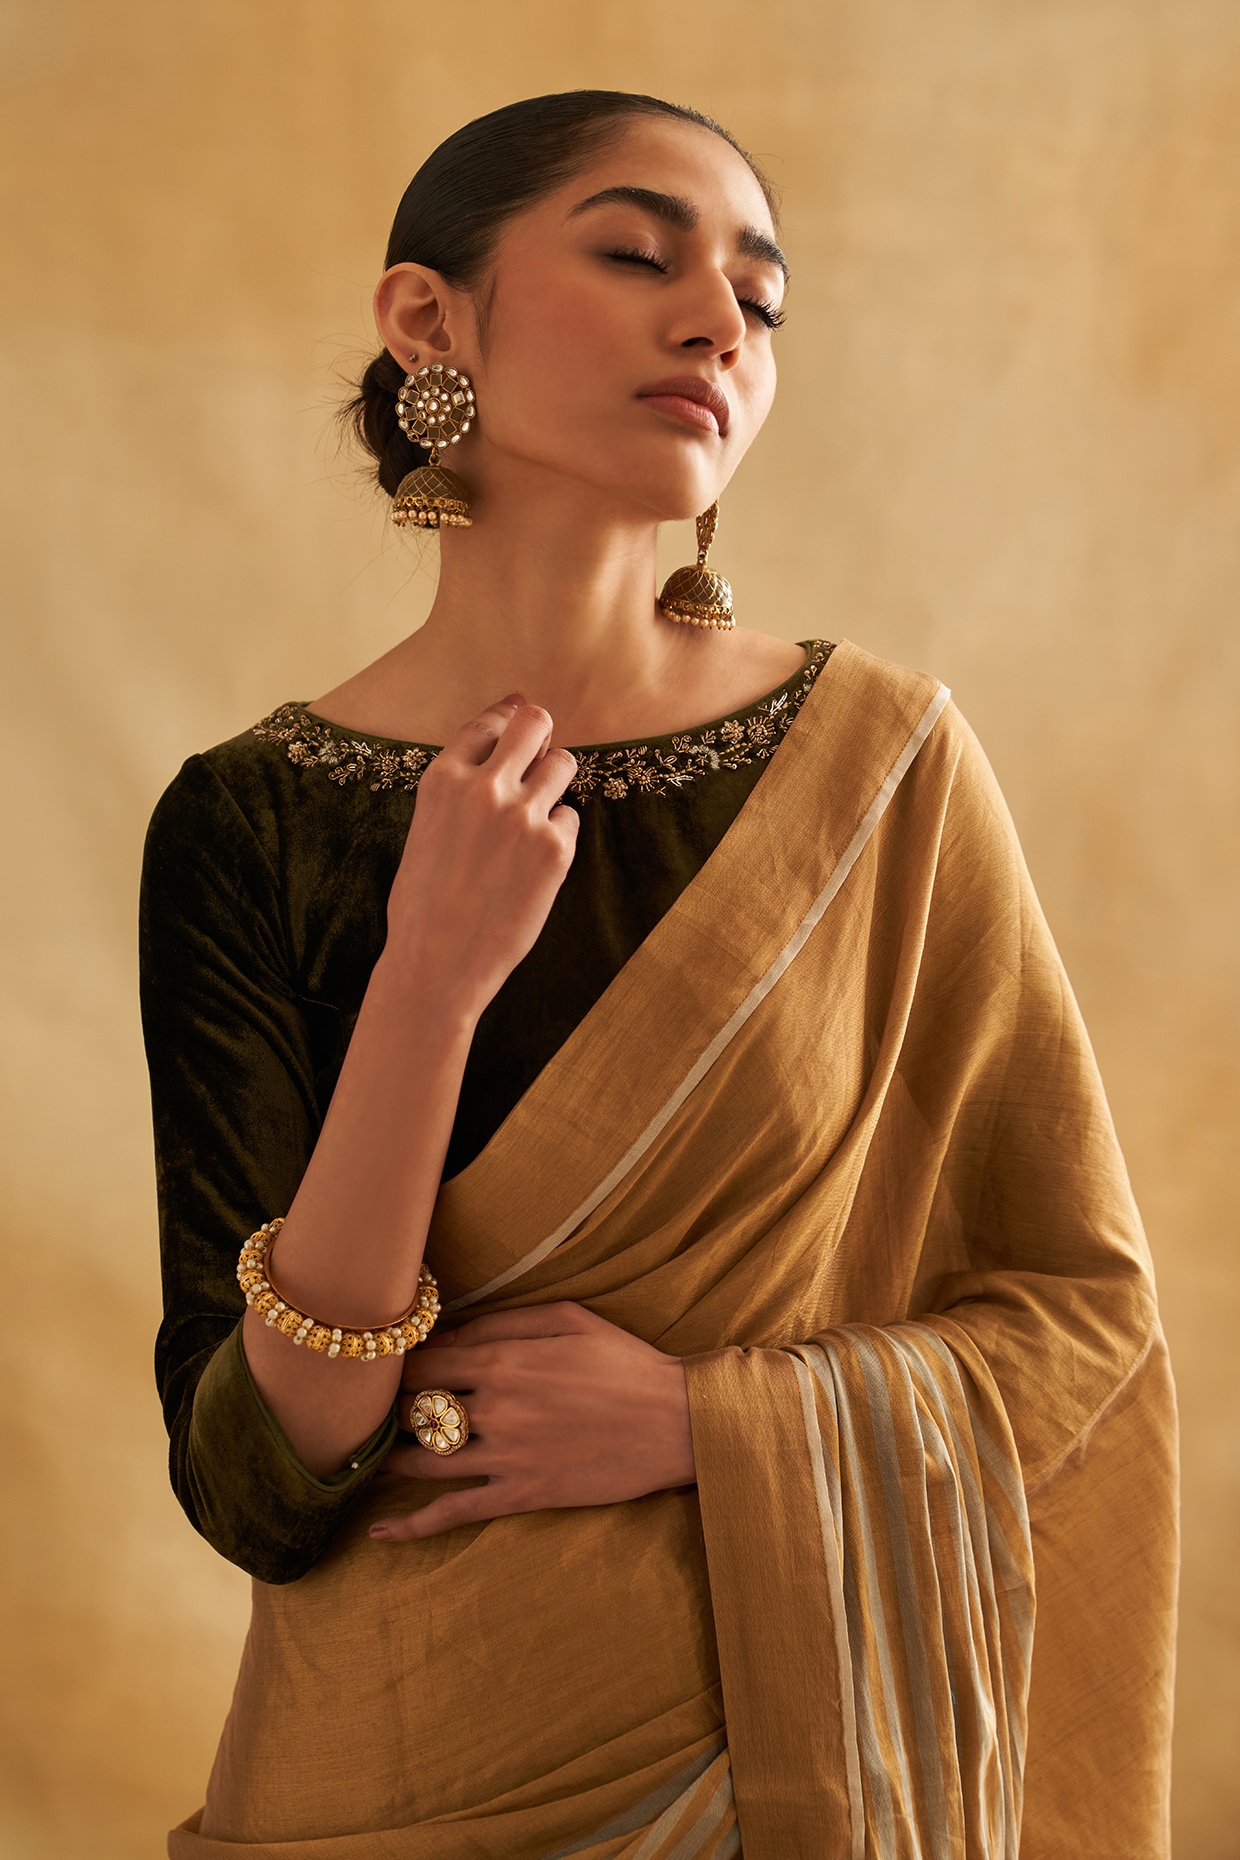 Shriya Saran Looks Ethereal In Gold And Silver Saree - SEE PICS